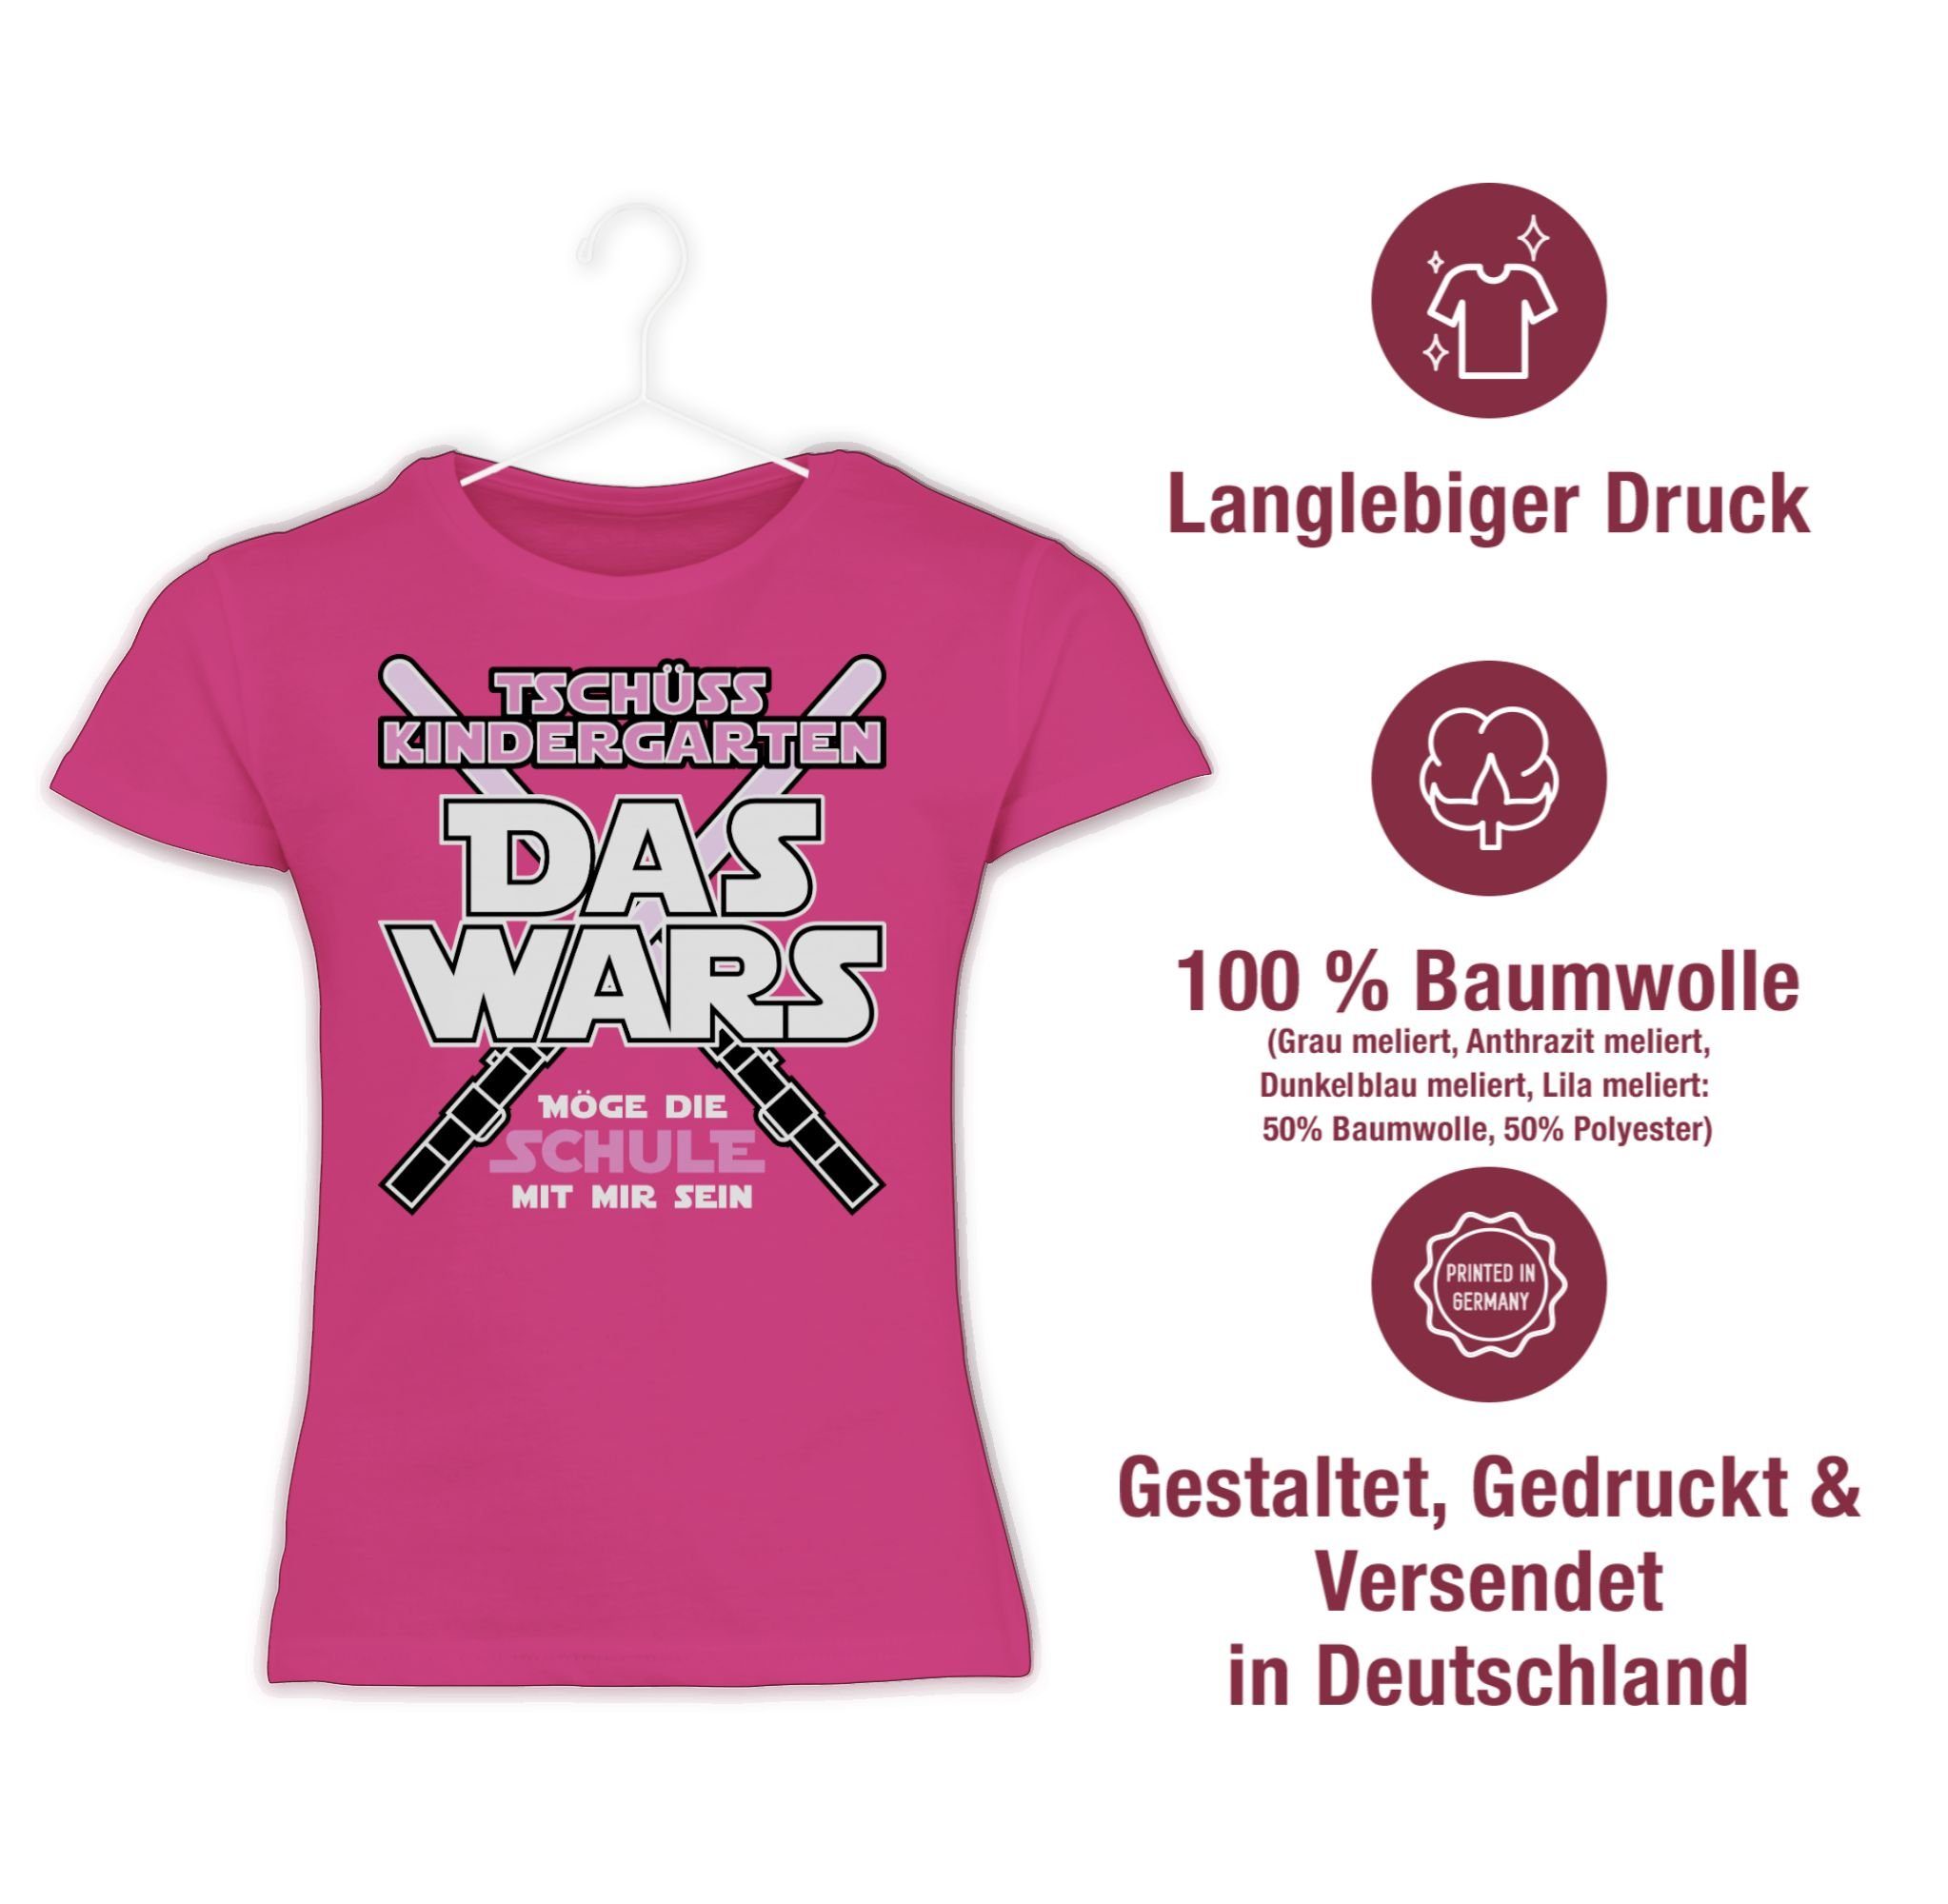 Shirtracer T-Shirt Das Einschulung Kindergarten 1 Rosa Wars Fuchsia Mädchen